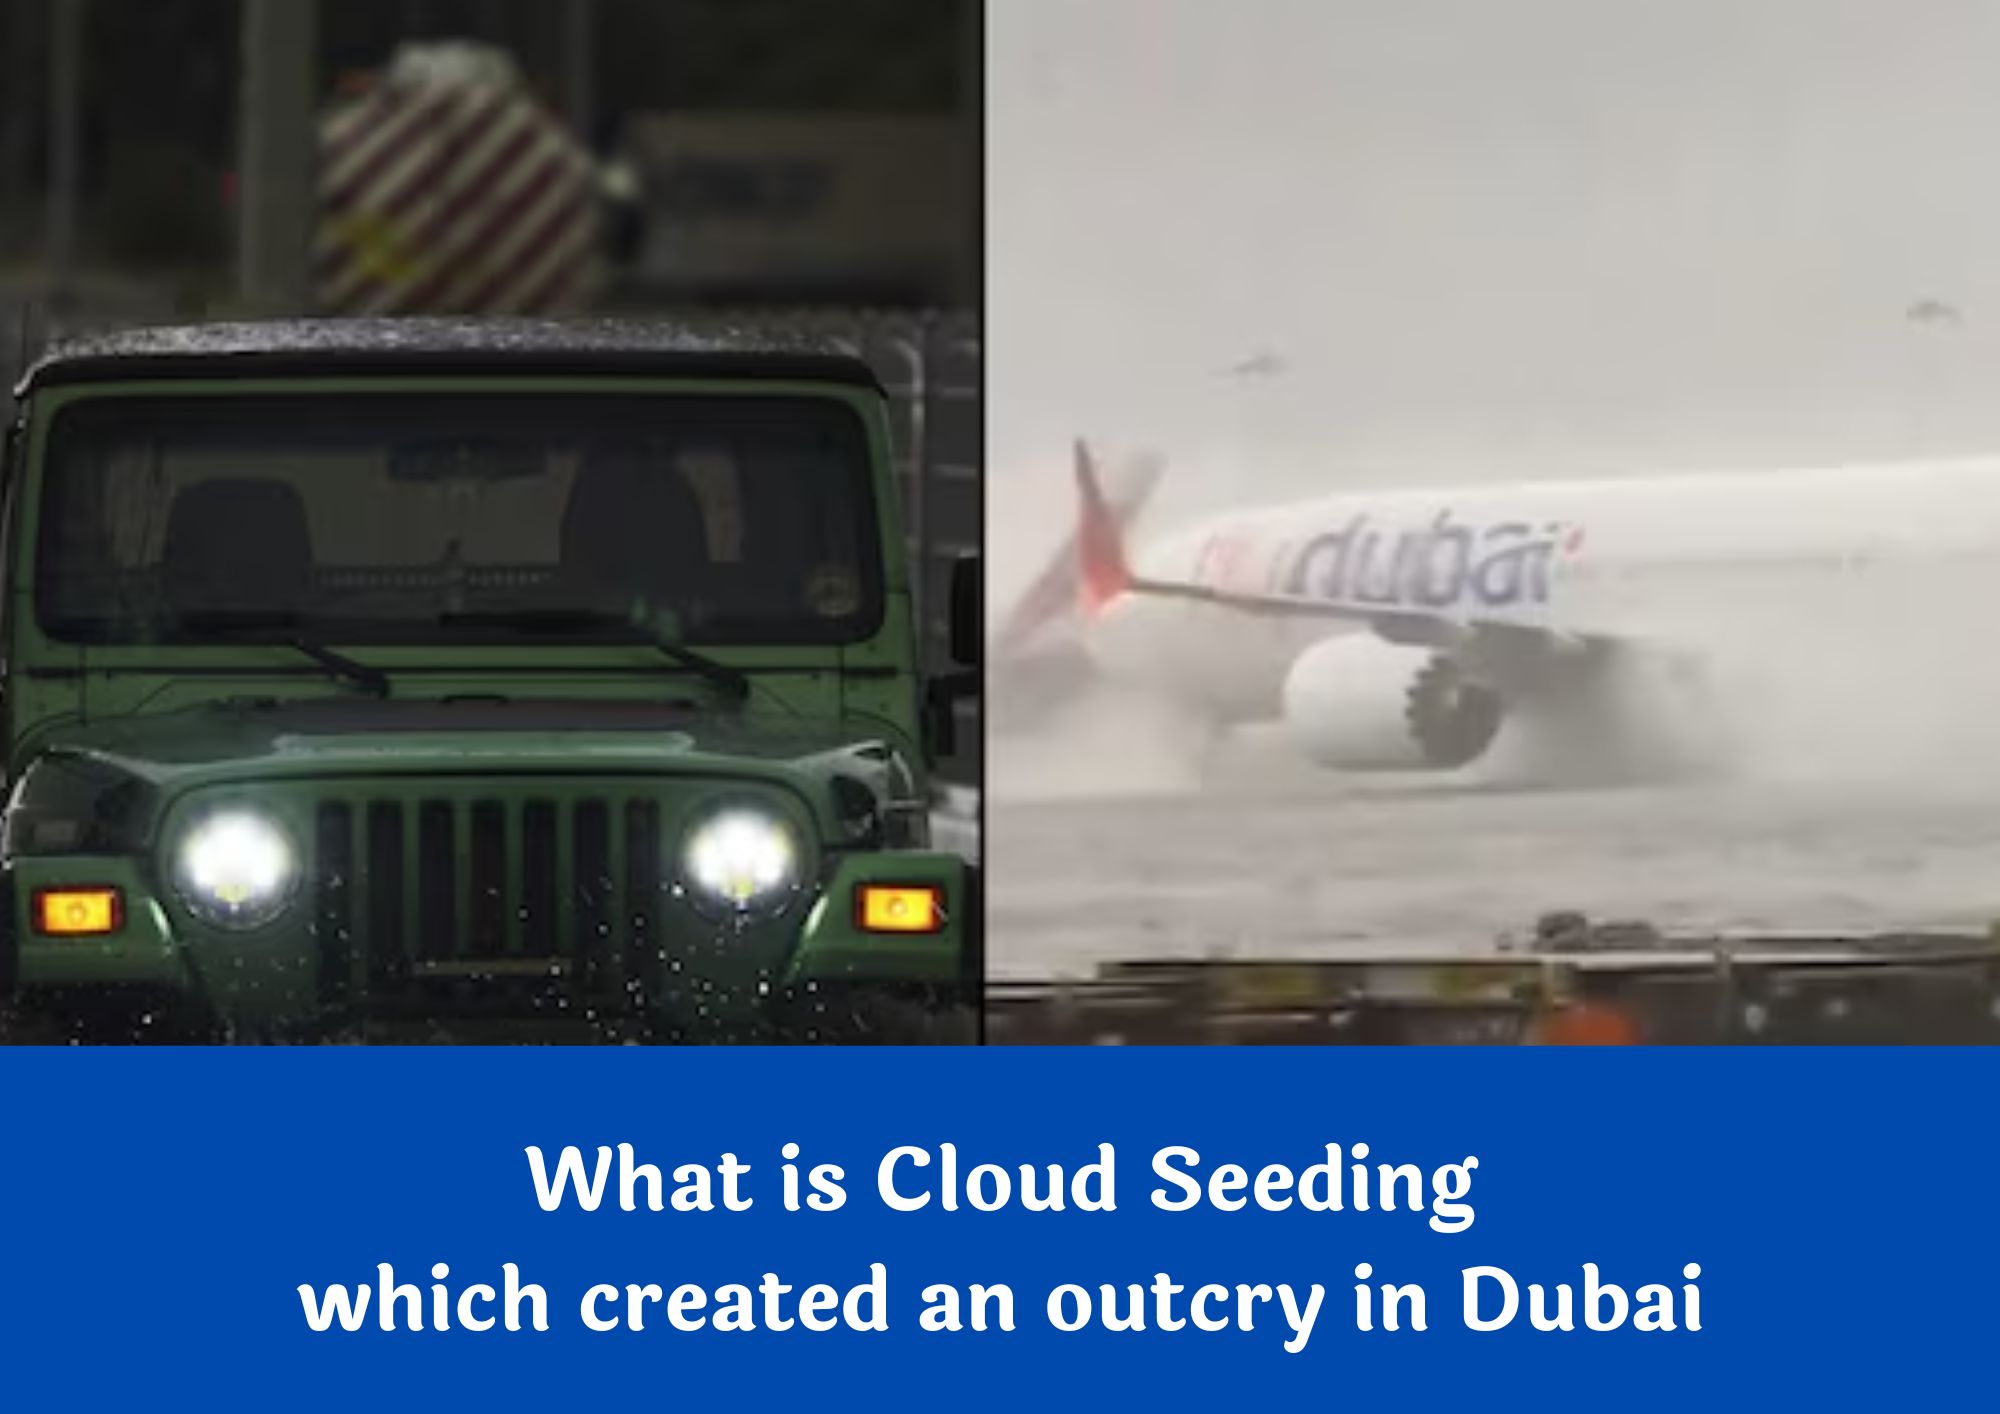 Cloud Seeding - What is Cloud Seeding, which created an outcry in Dubai